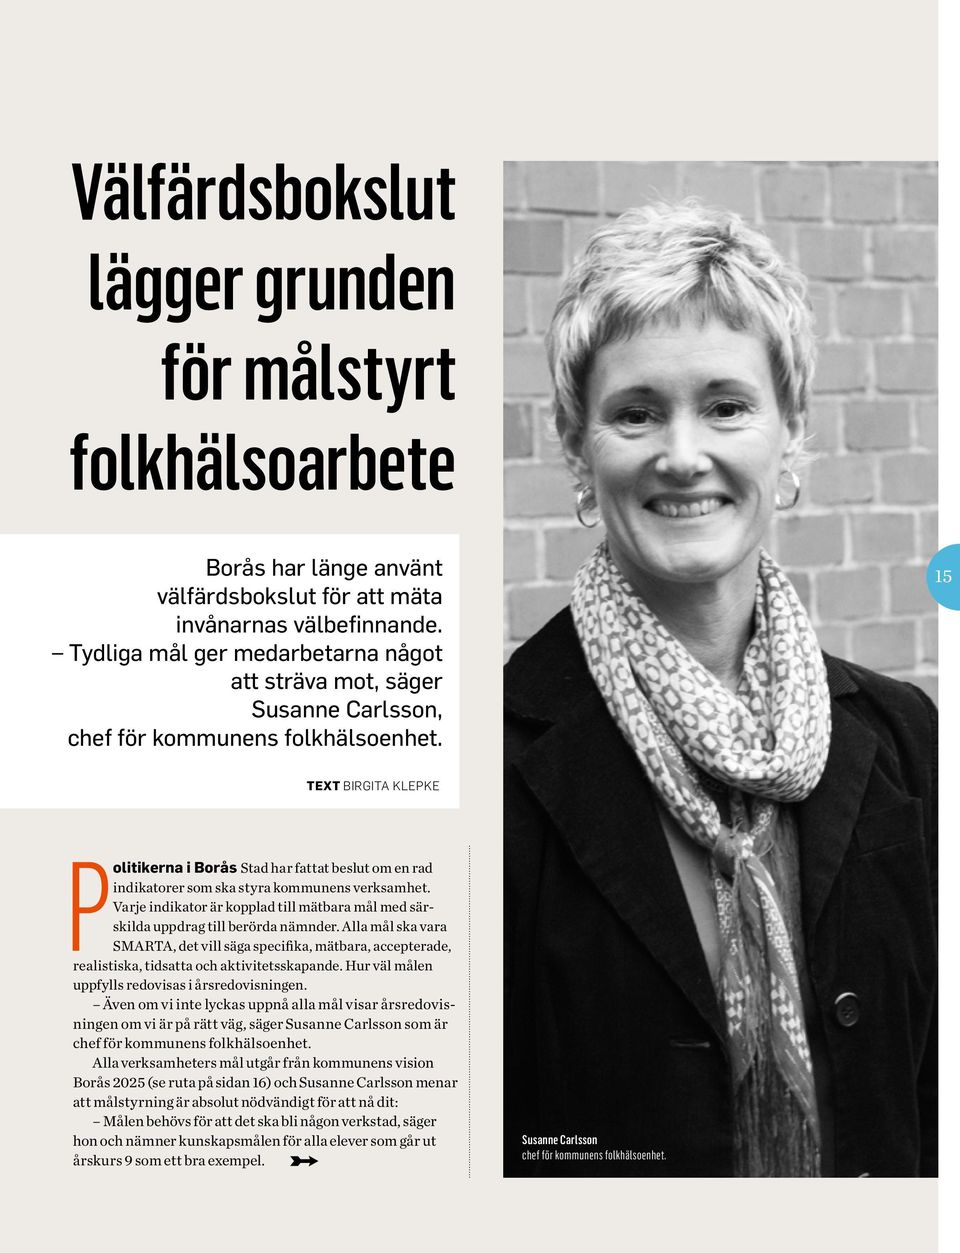 15 Text BIRGITA KLEPKE Politikerna i Borås Stad har fattat beslut om en rad indikatorer som ska styra kommunens verksamhet.